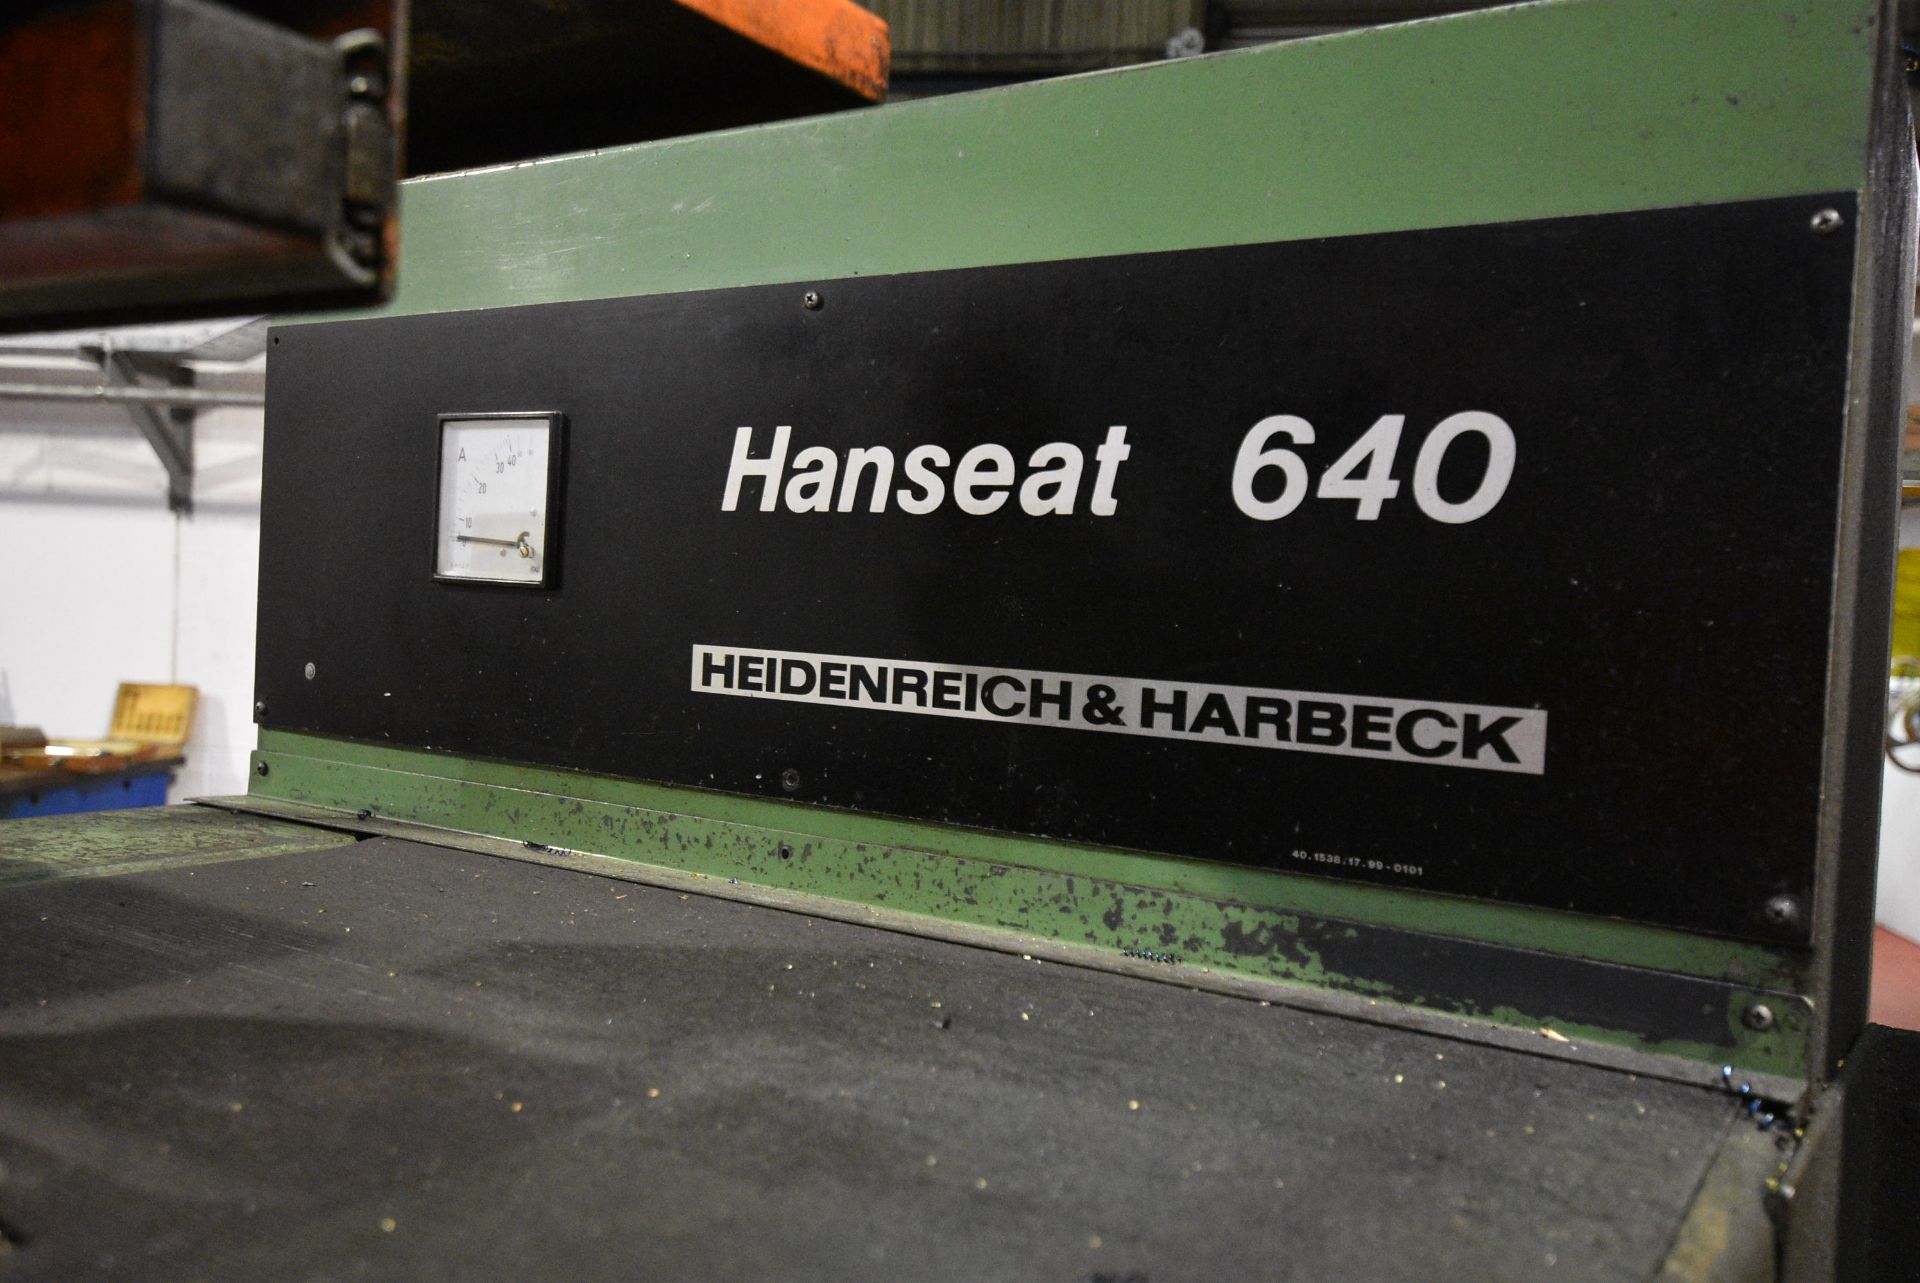 Heidenreich & Harbech HANSEAT 640 SLIDING SURFACIN - Image 8 of 11